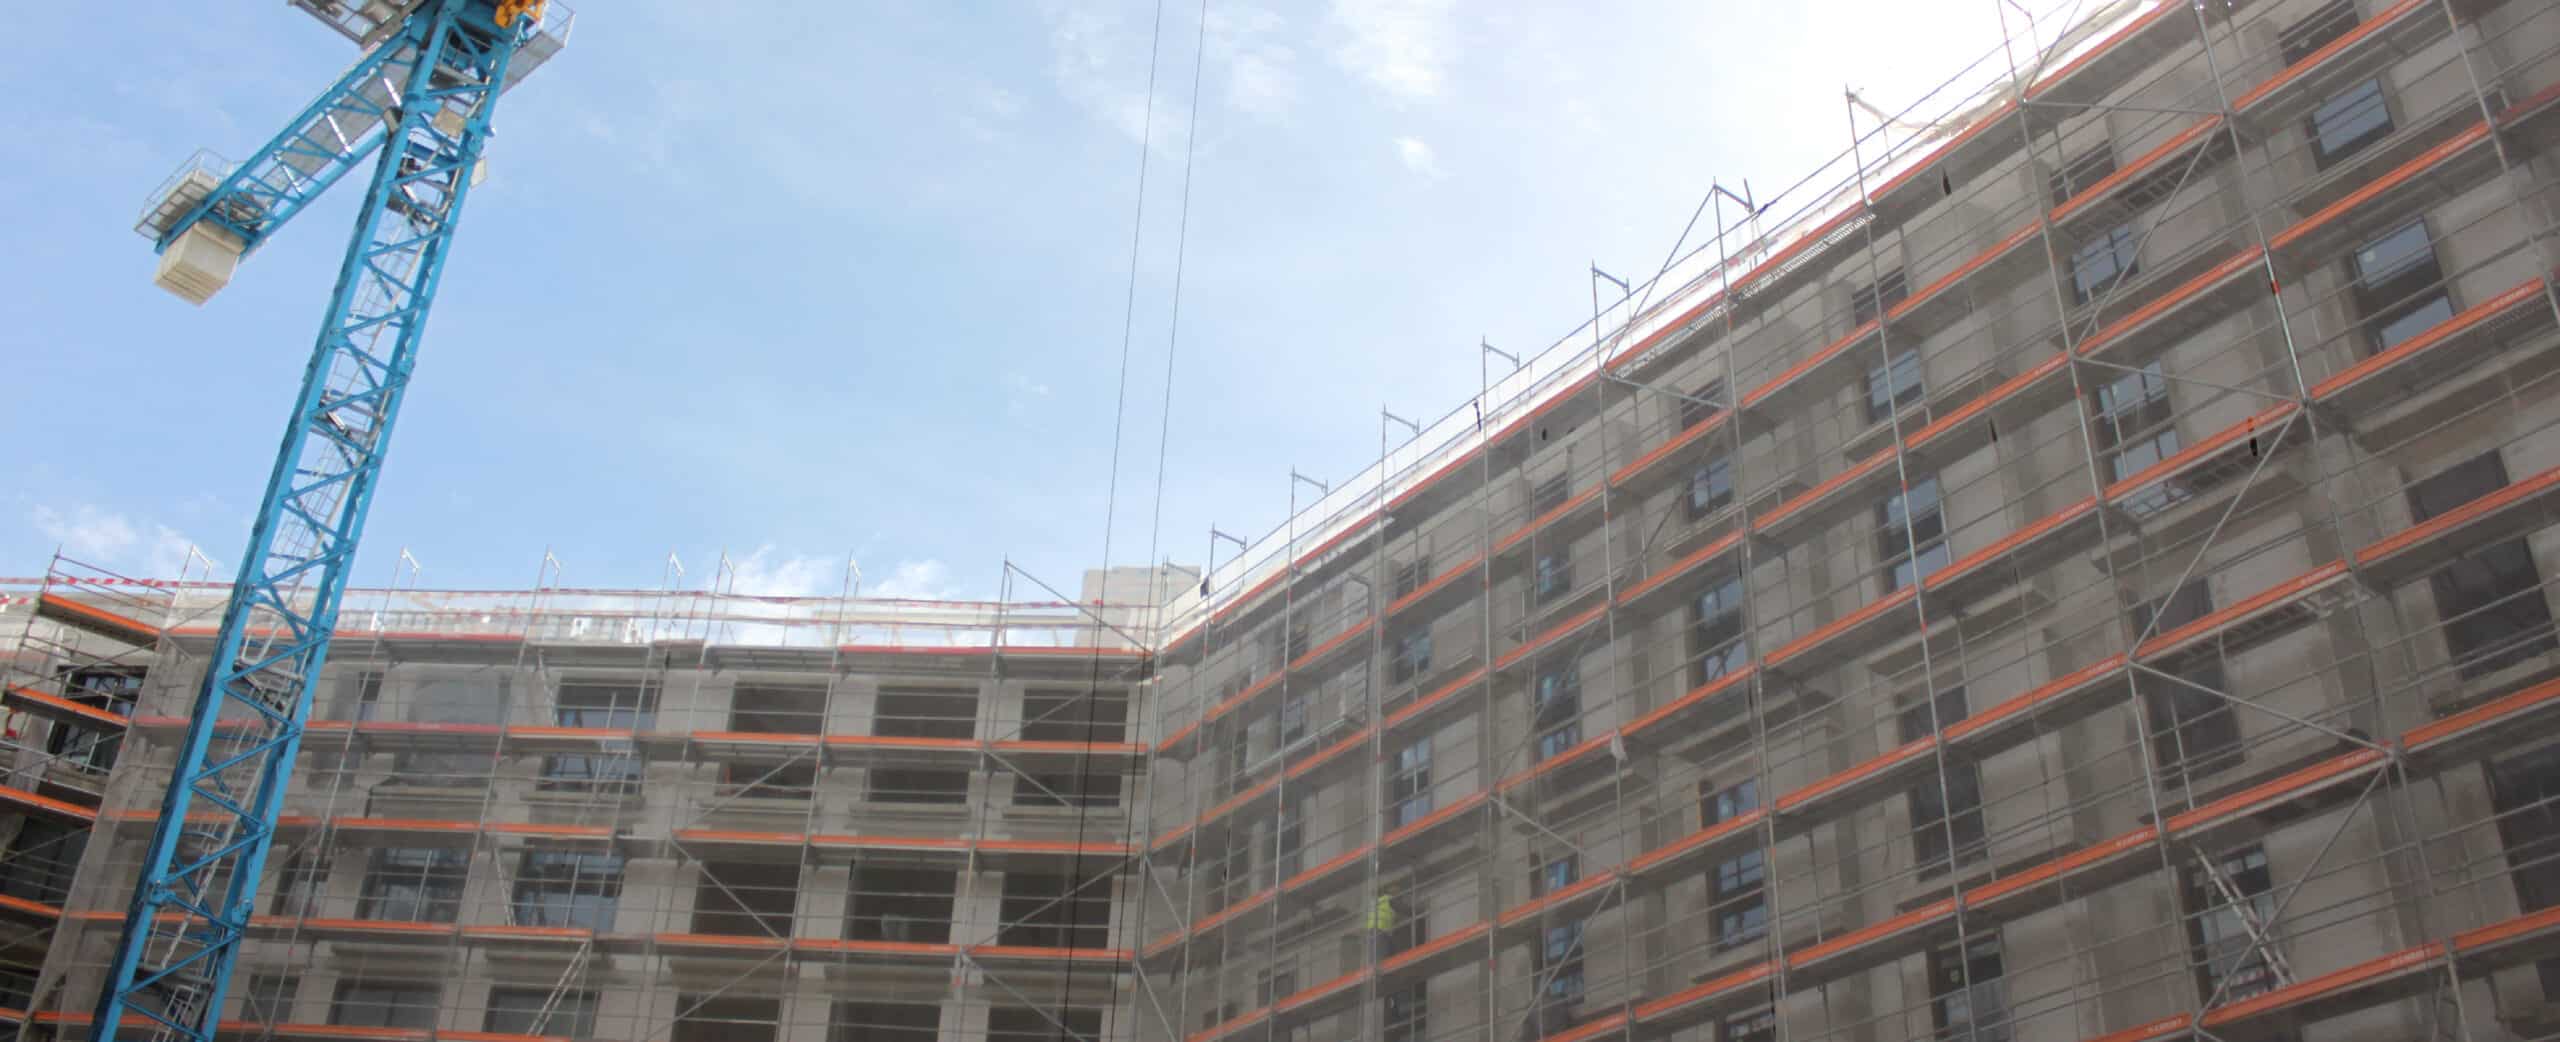 scaffolding-façade-project